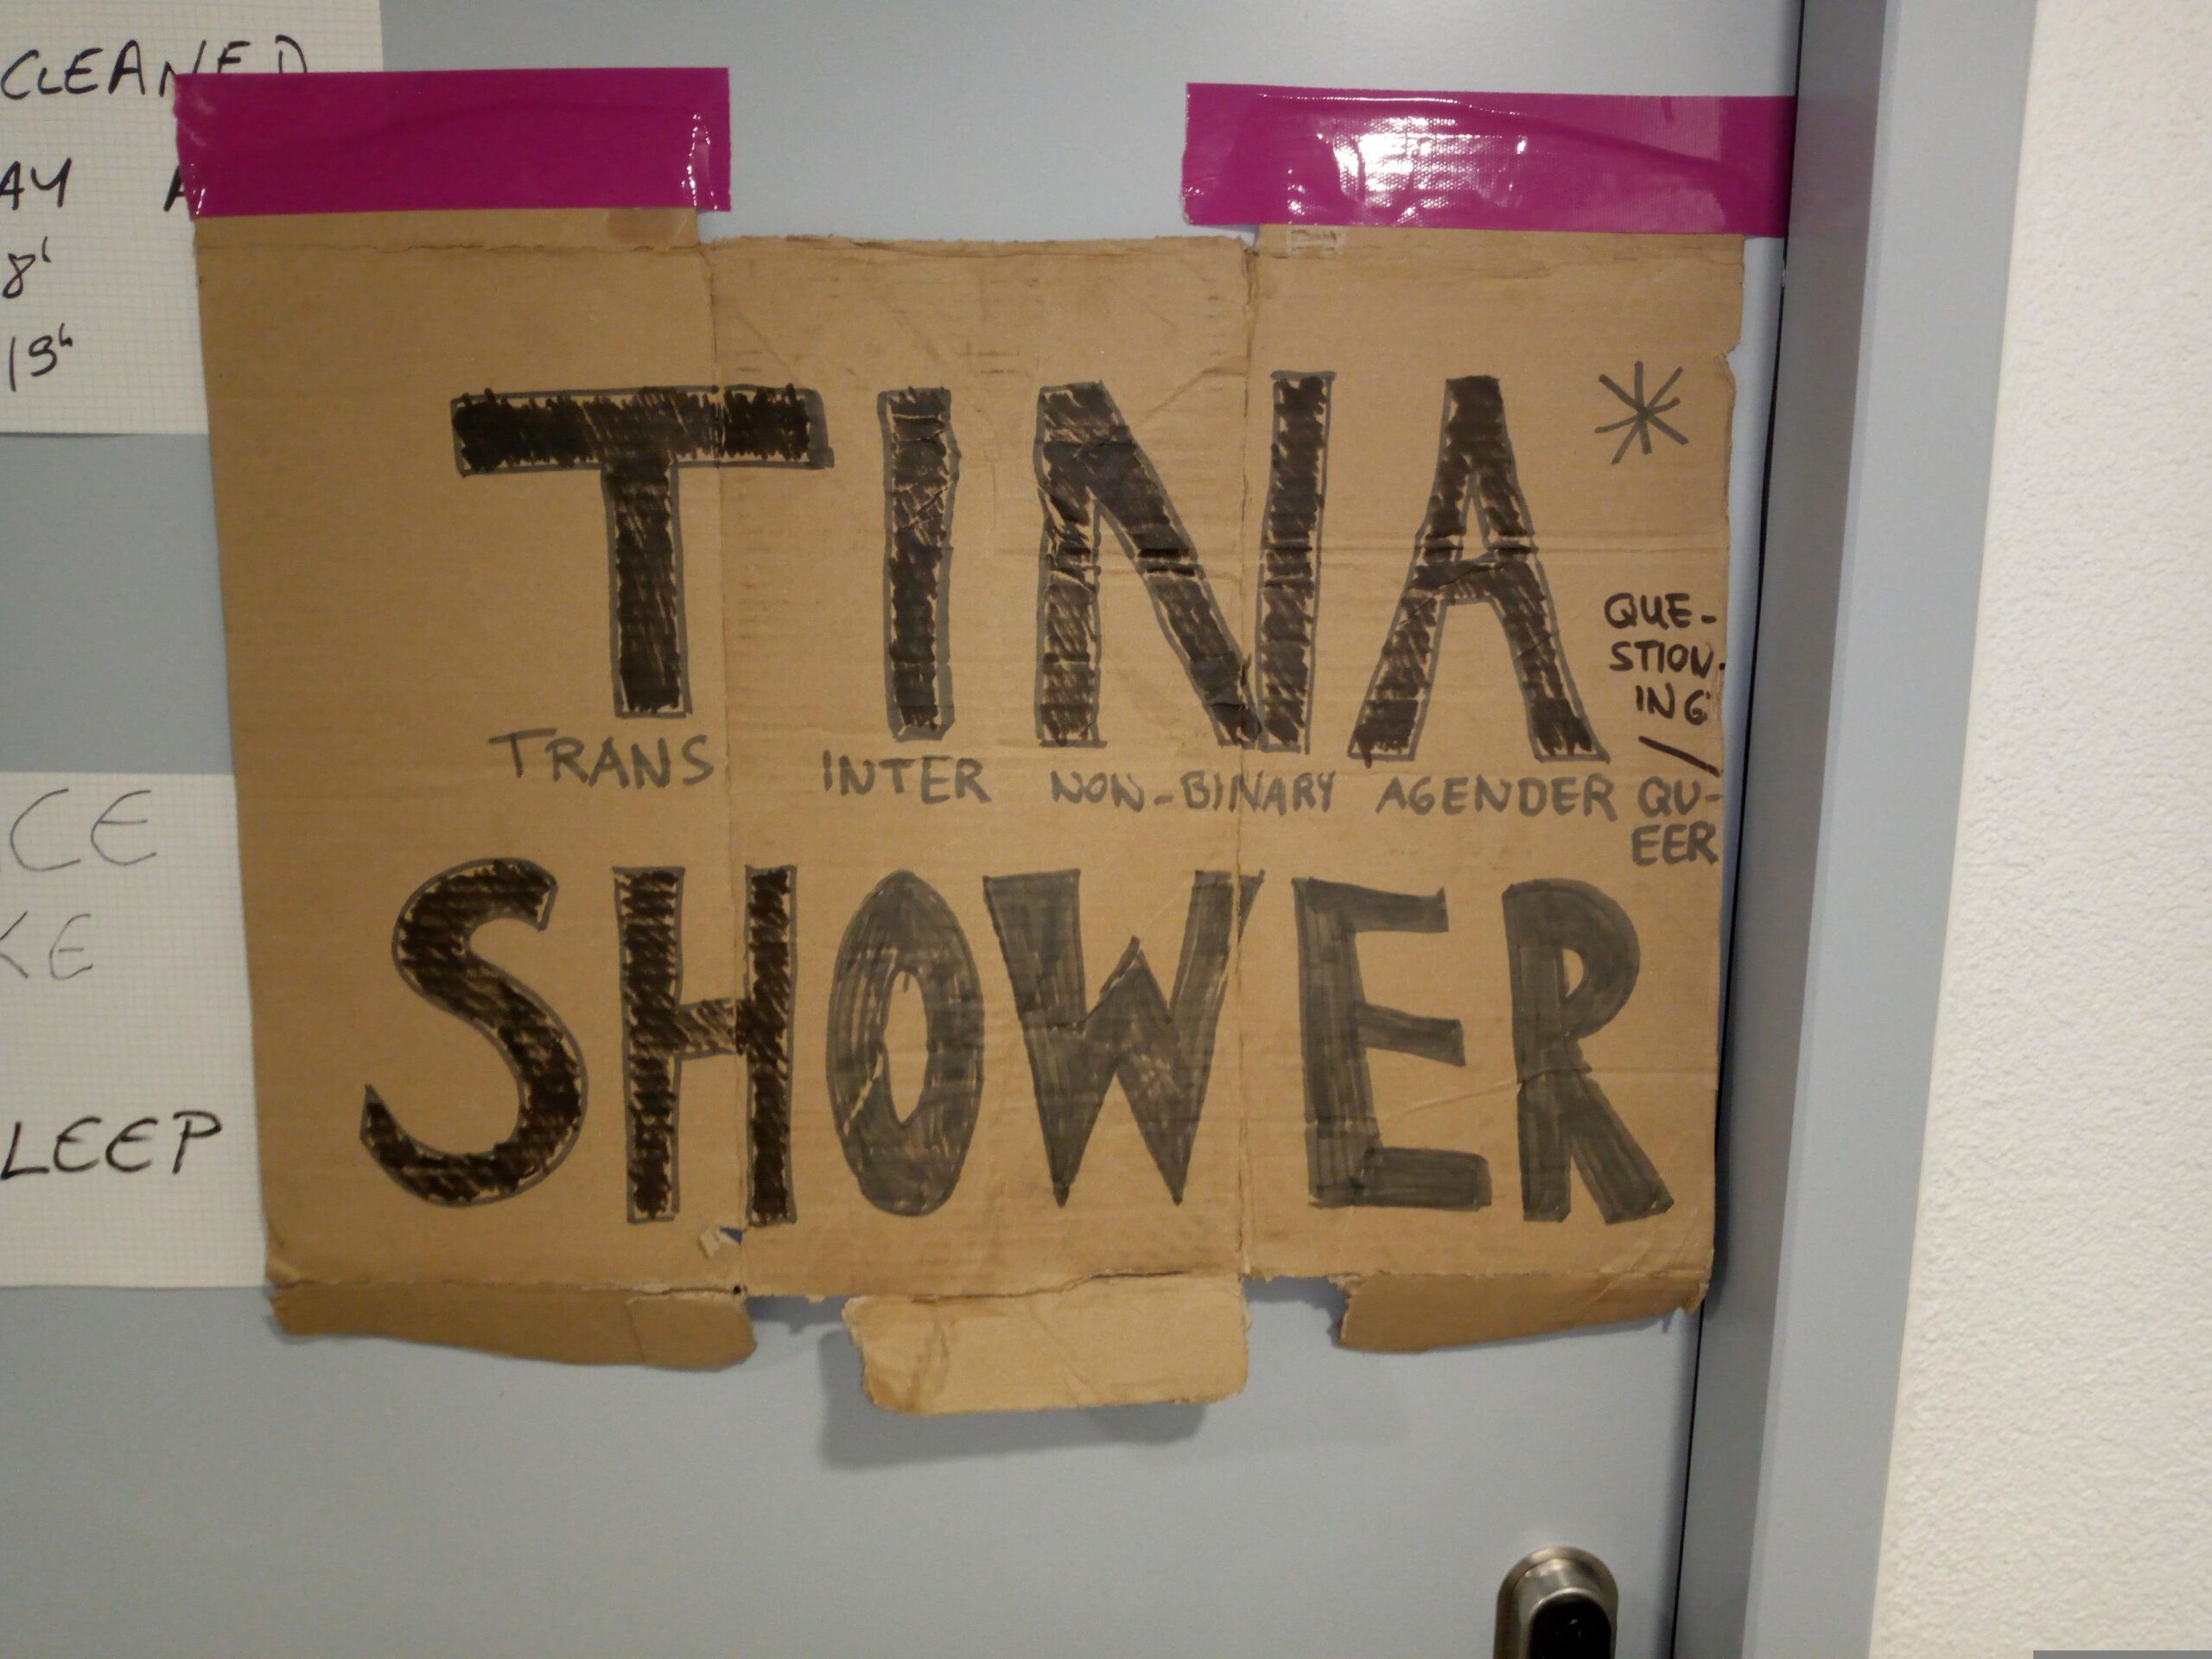 Ein Türschild, auf dem eine Dusche als "Trans Inter Nonbinary Agender Shower" ausgeschrieben ist.